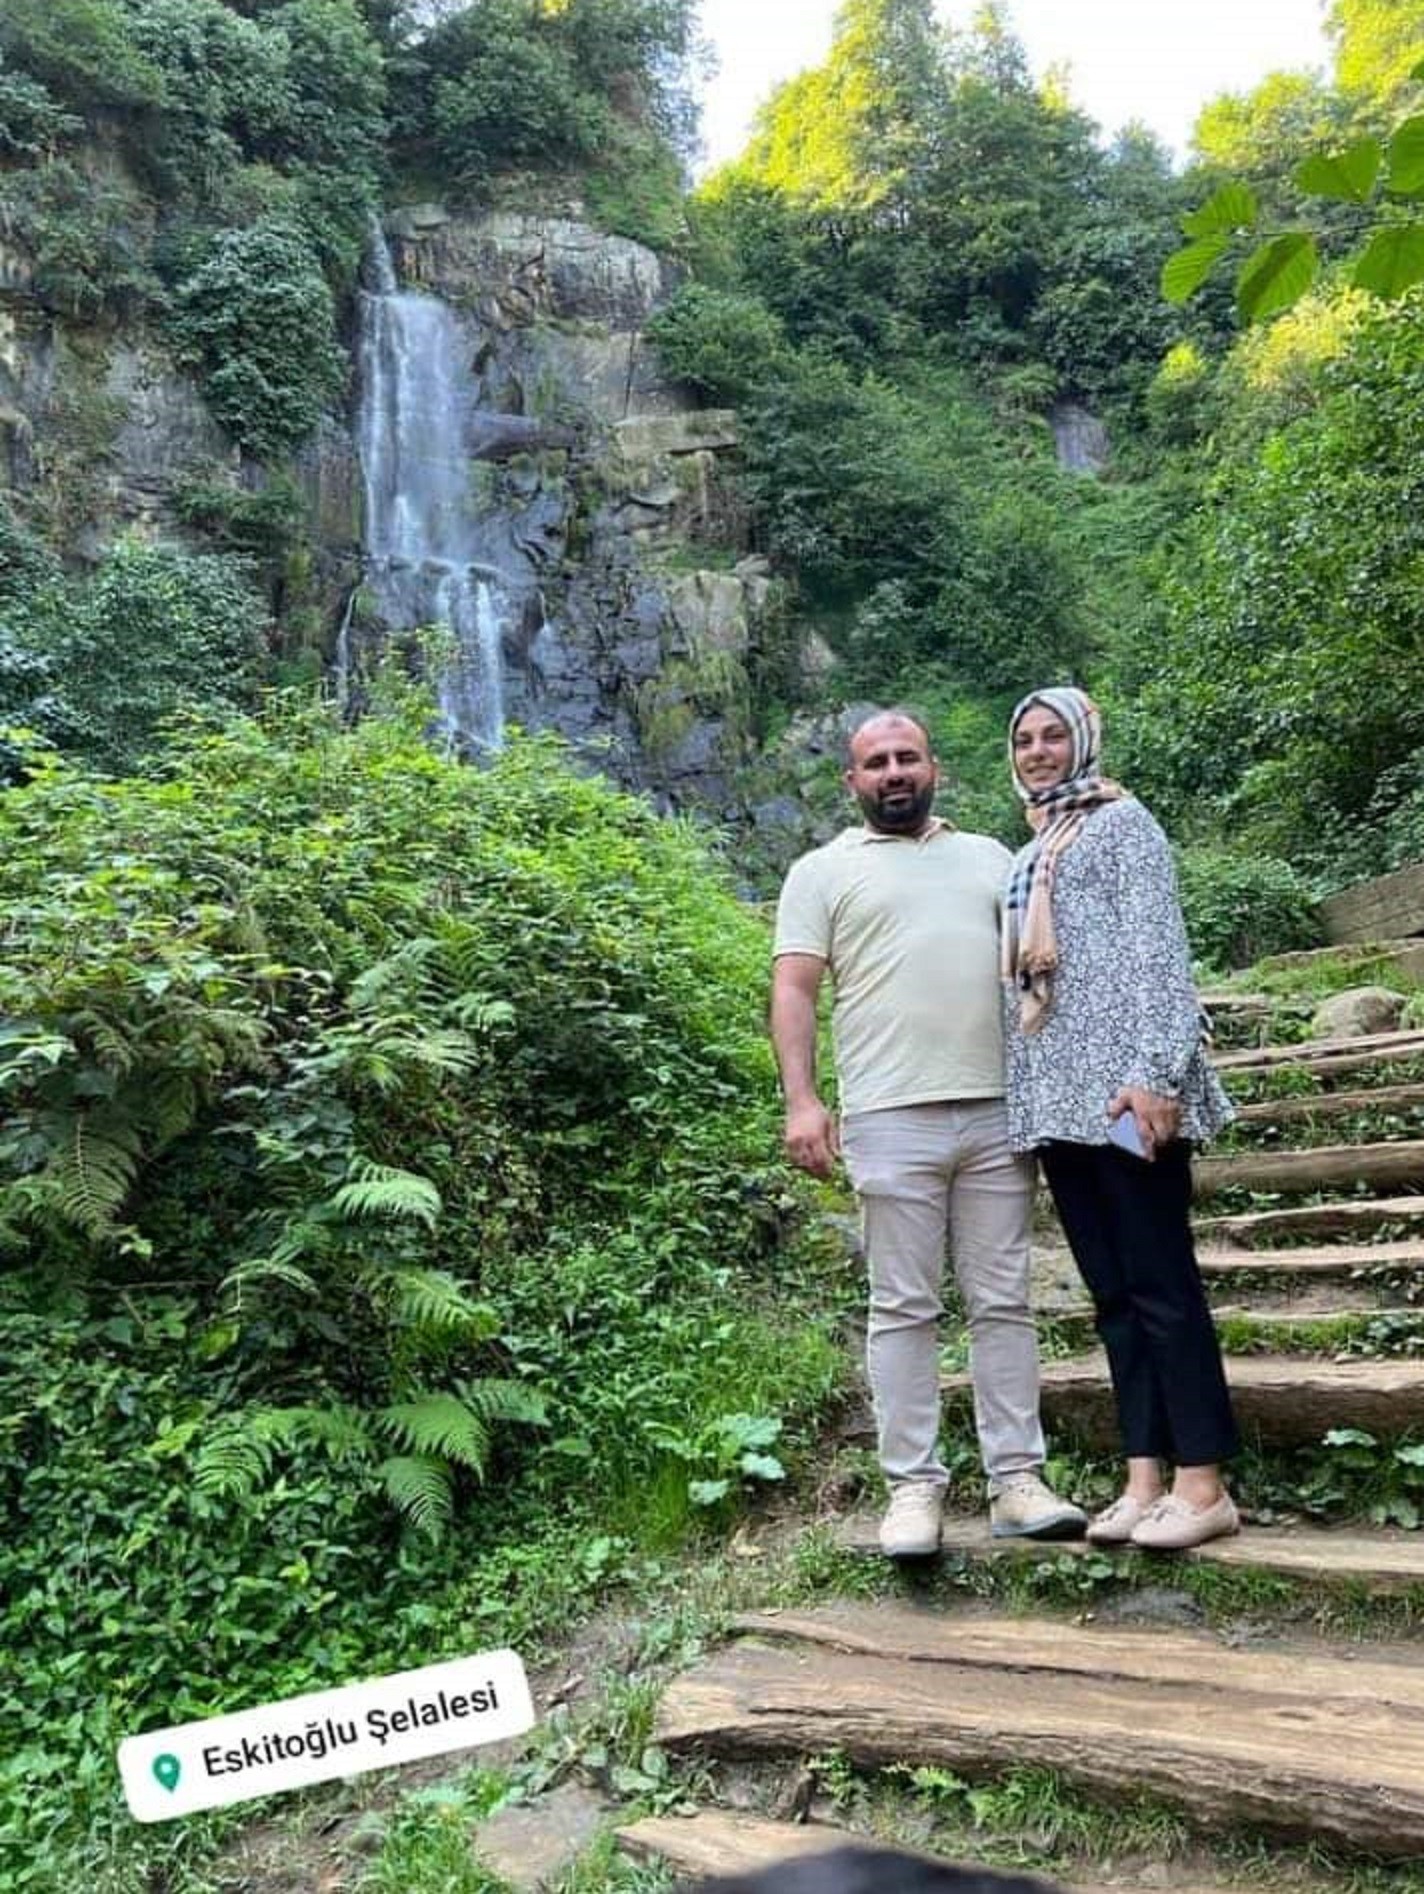 Trabzon’da Güngörmüş ailesi için taziye programı